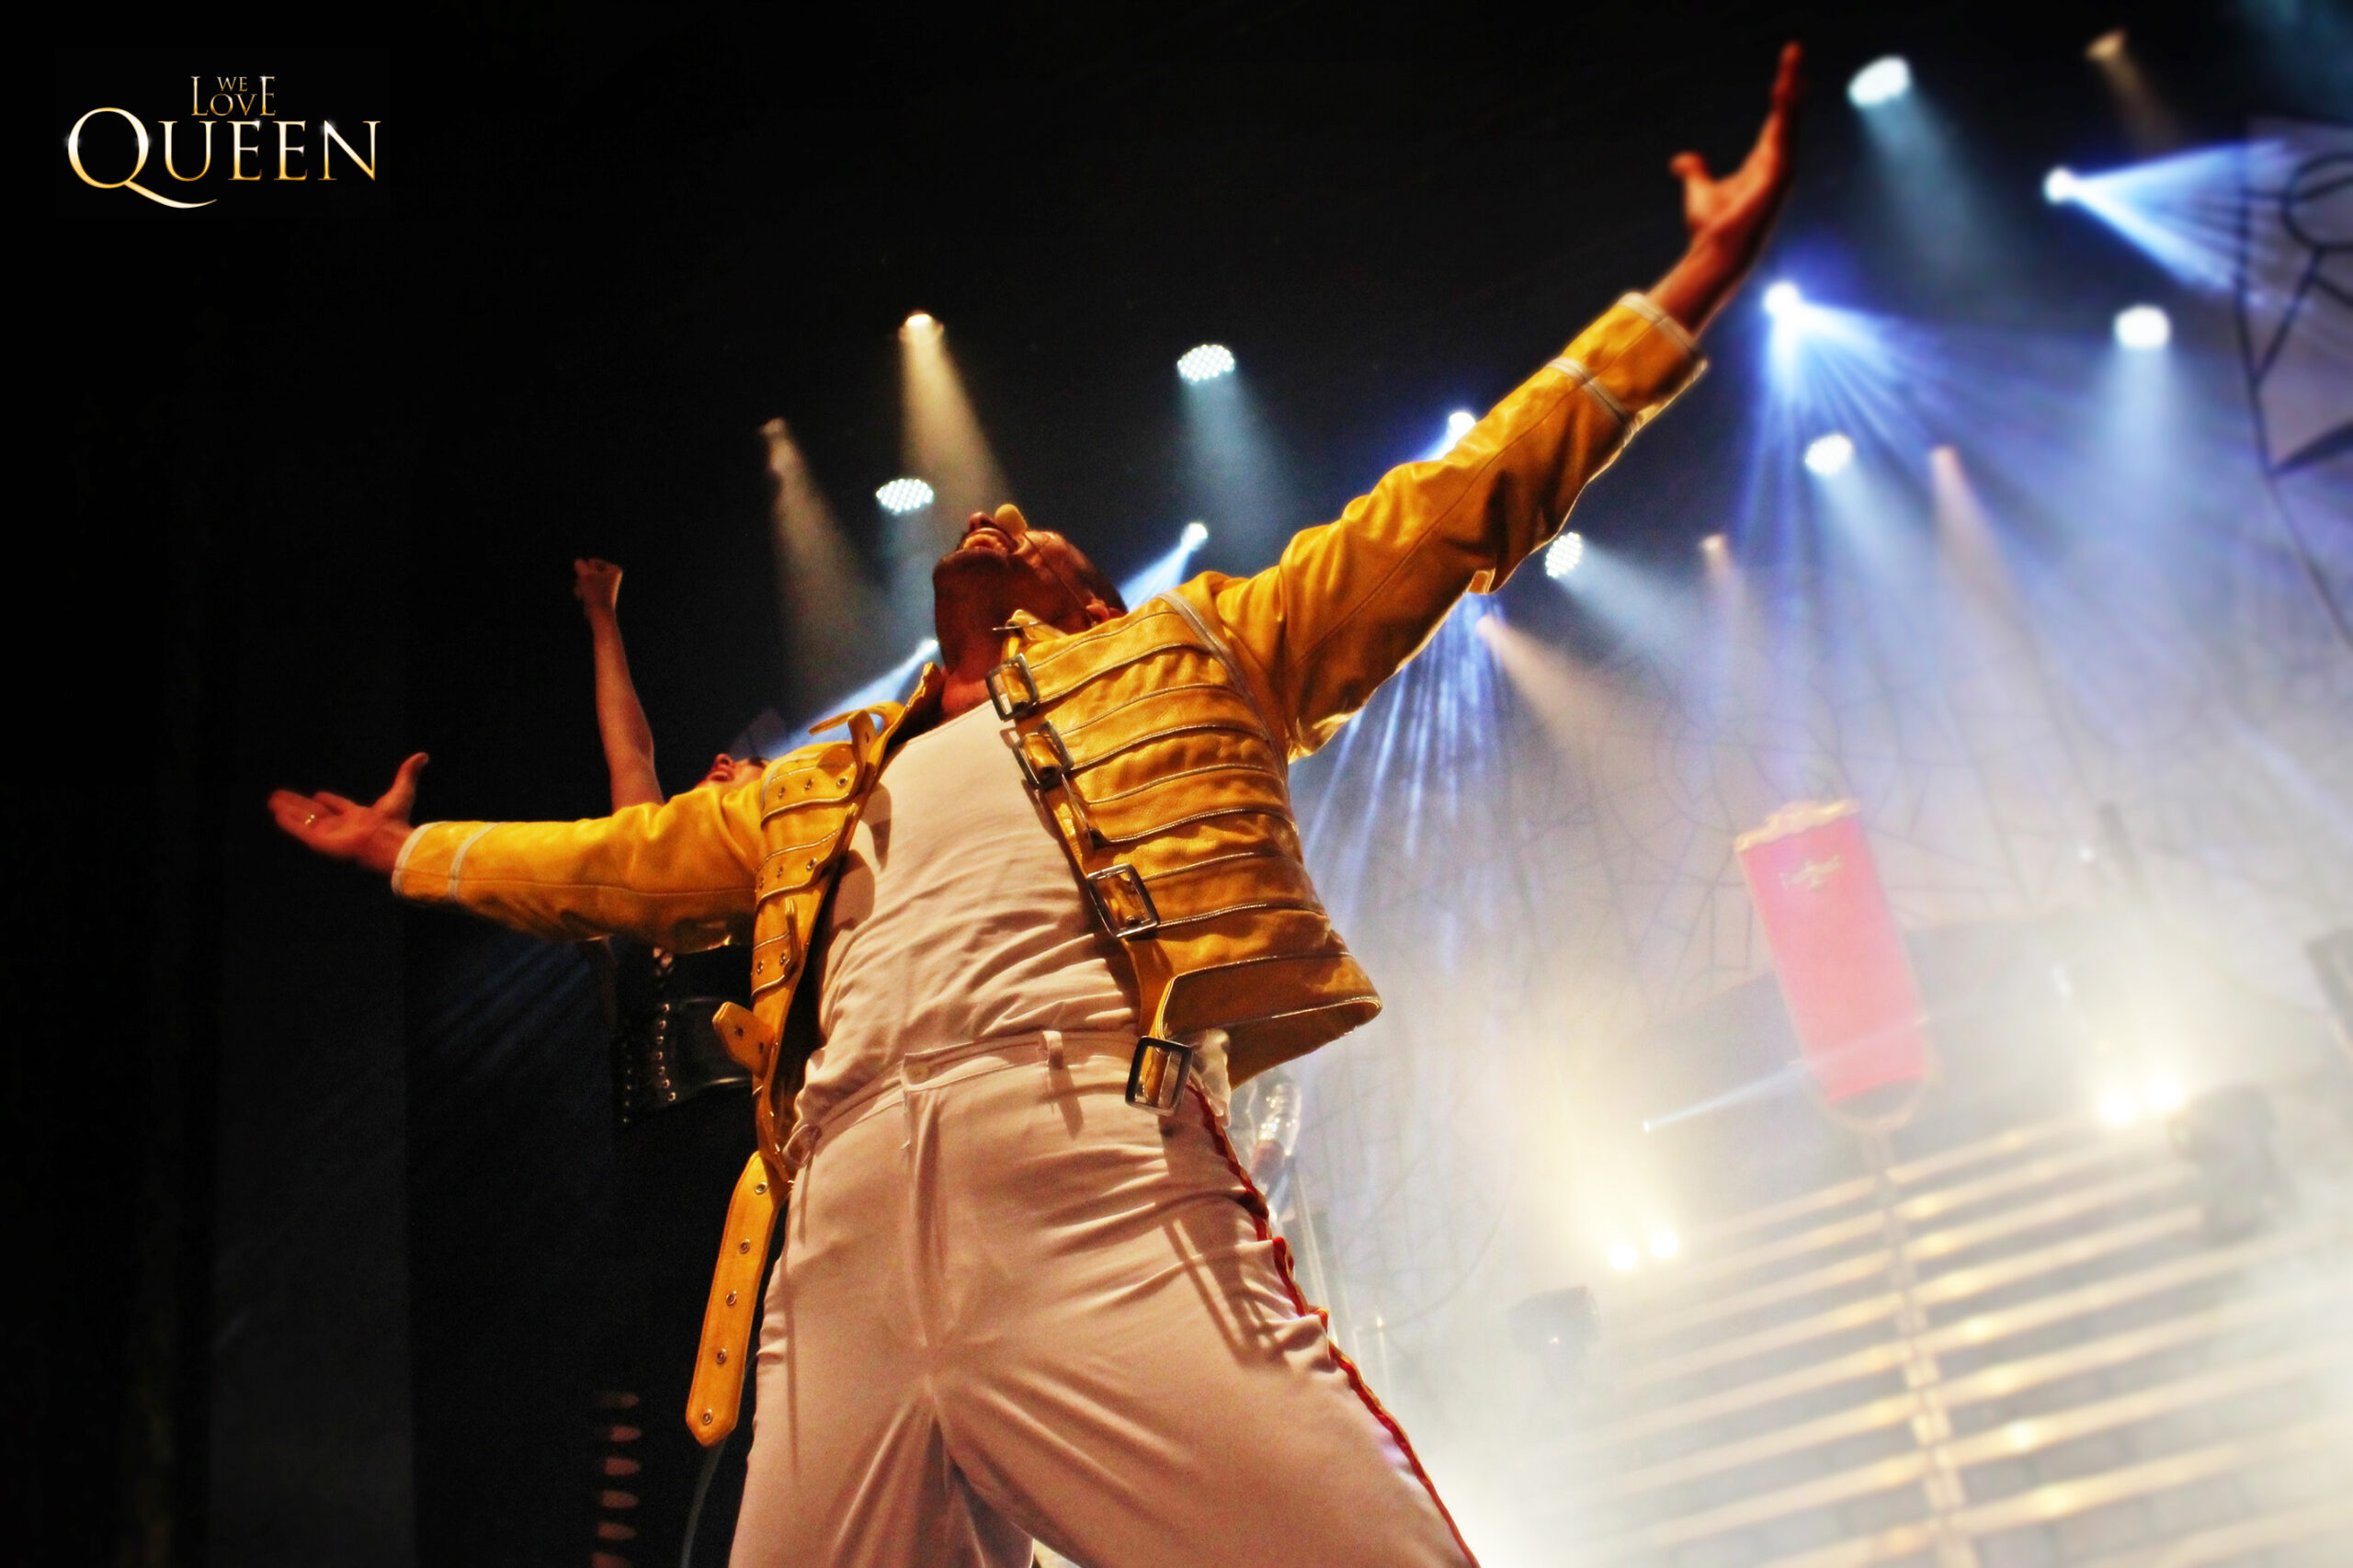 El musical “We Love Queen” llega al Teatro Chapí de Villena